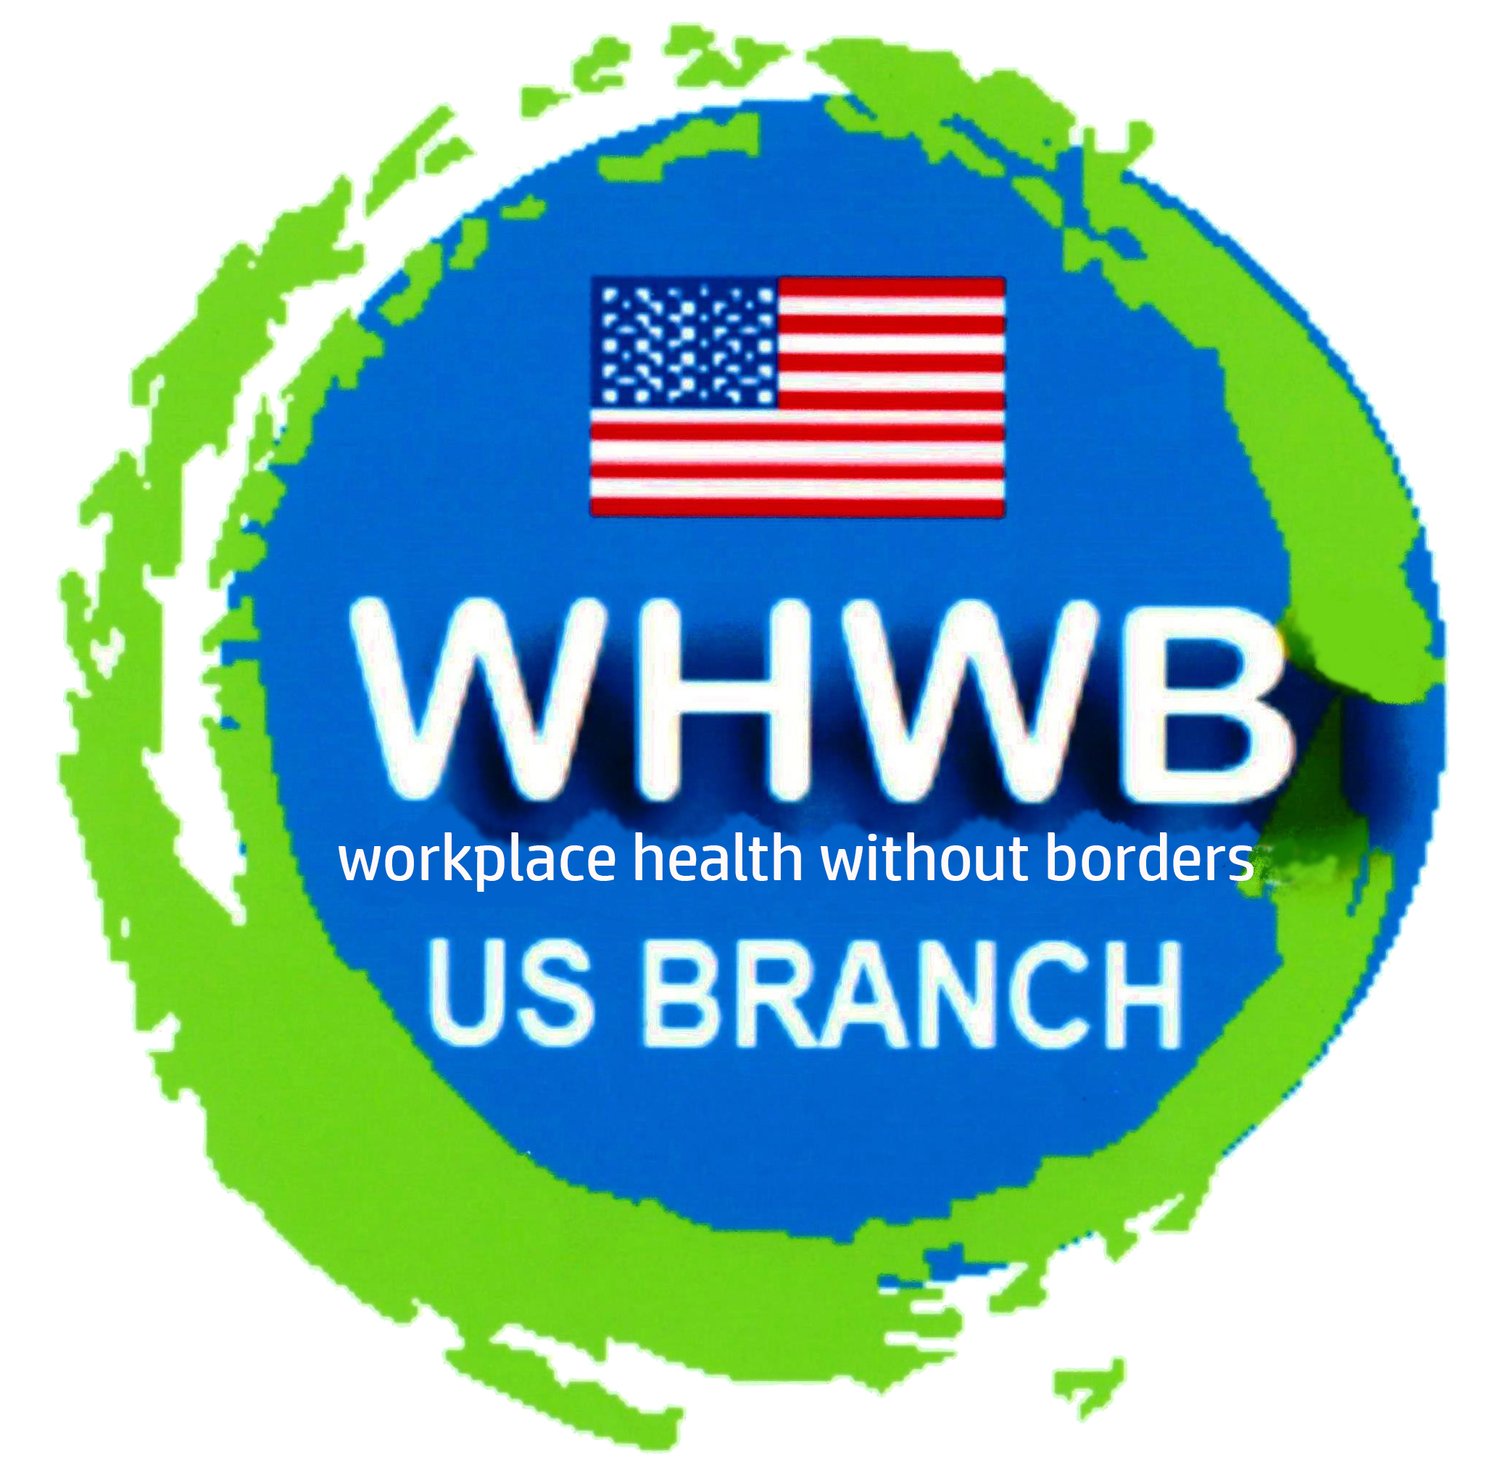 WHWB-US